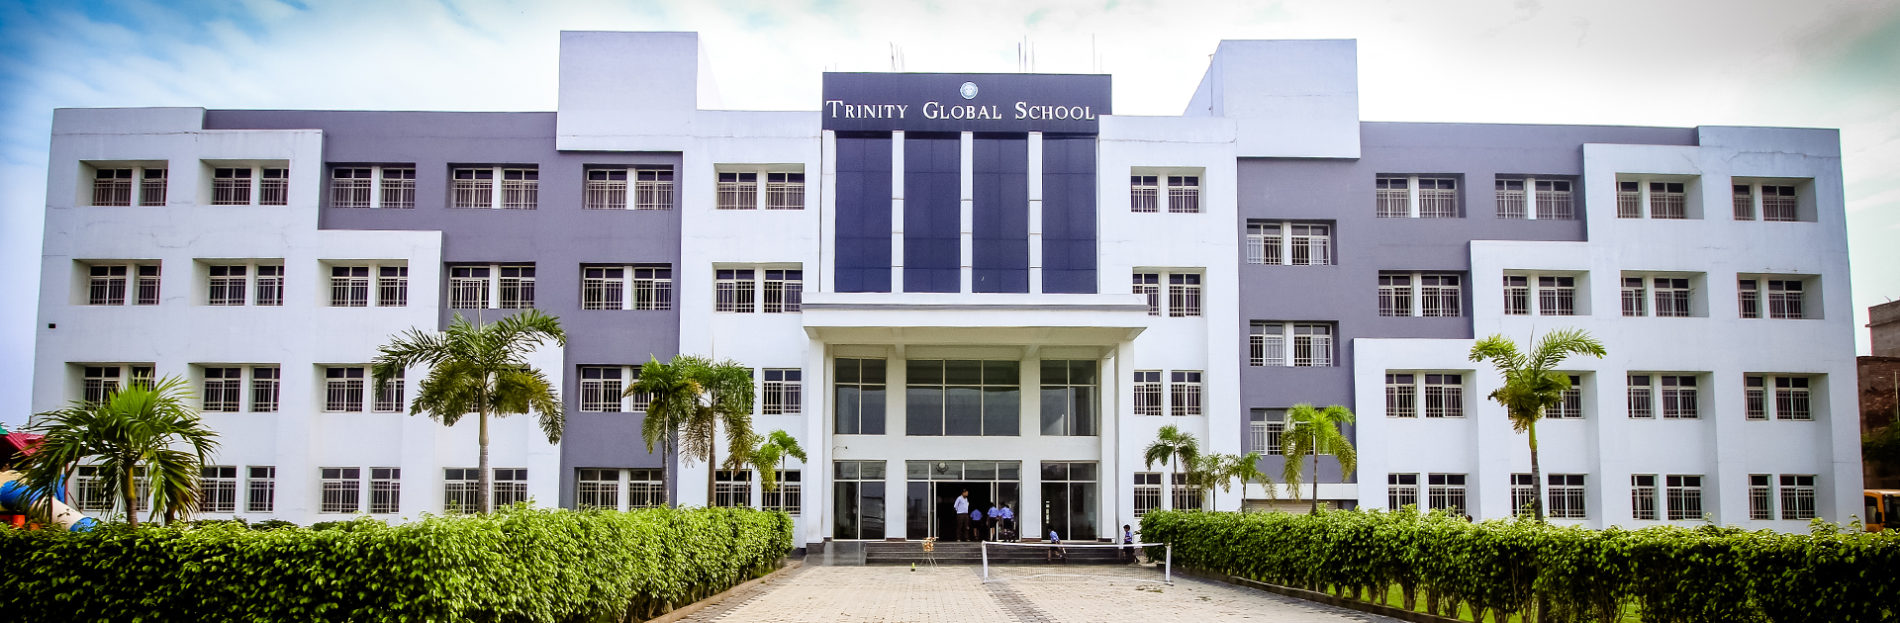 Trinity Global School Education | Schools